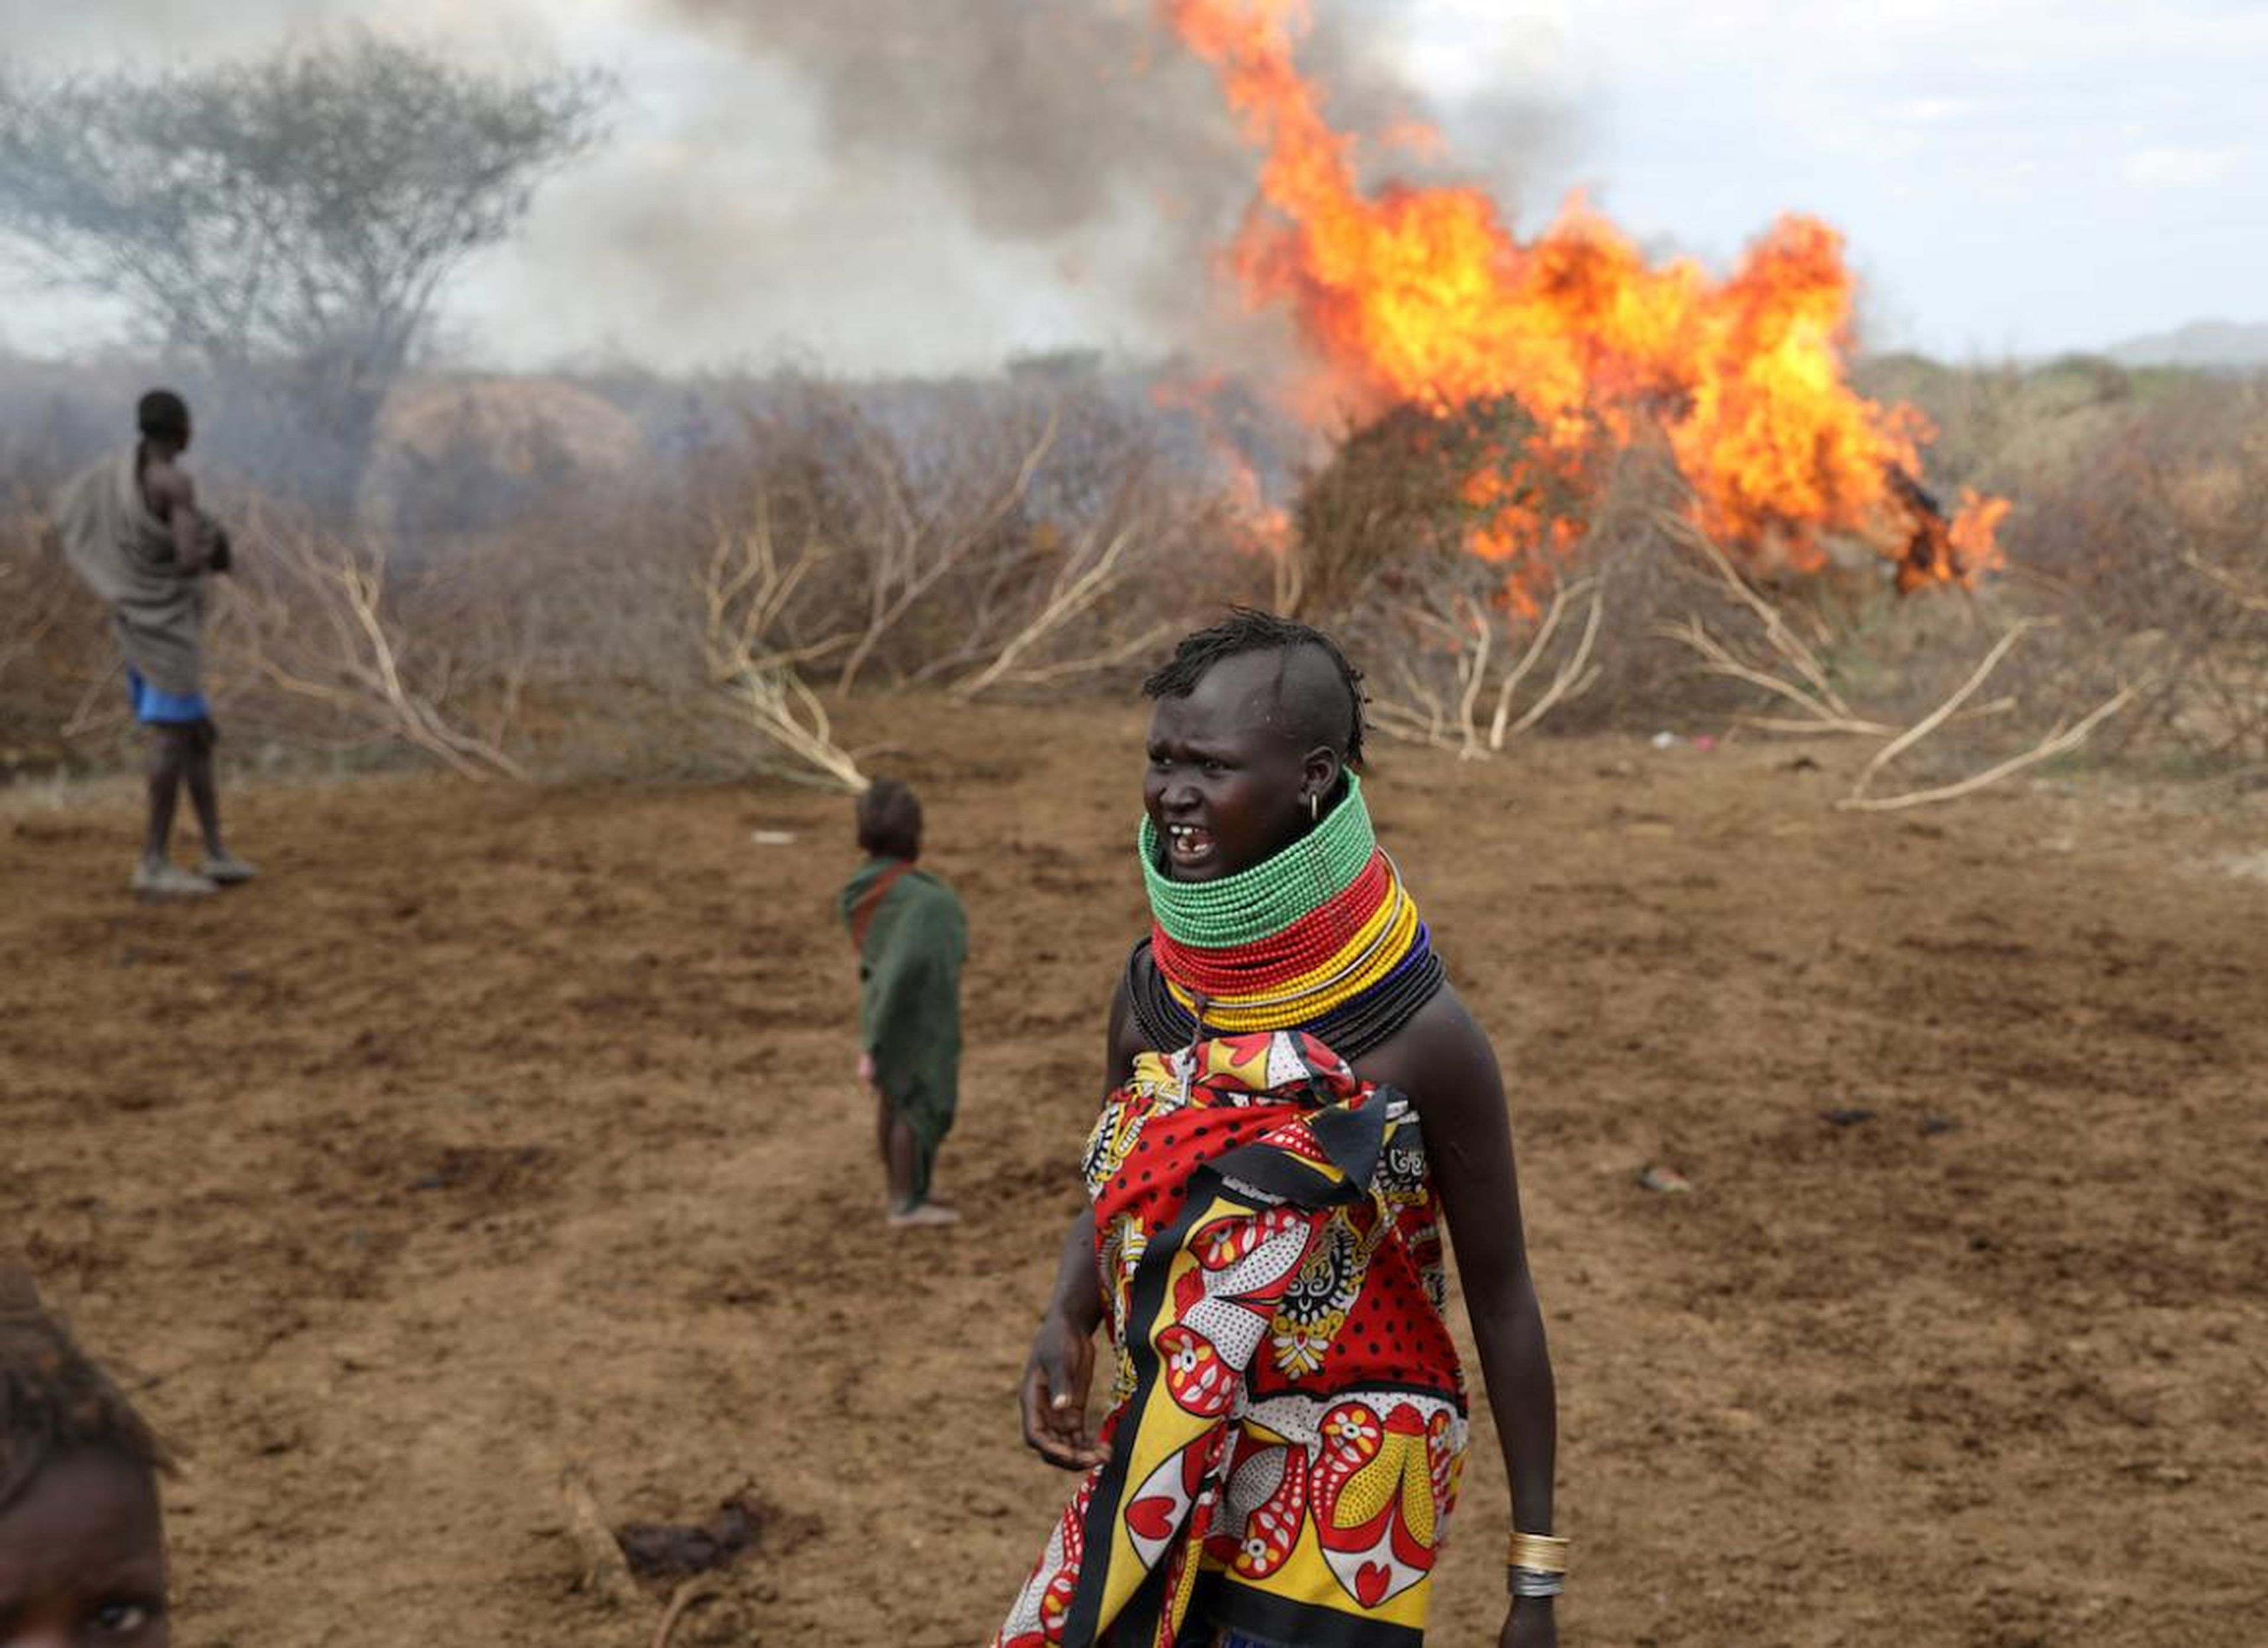 Una mujer de la tribu turkana reacciona después de que un incendio accidental arrasara un refugio en un asentamiento en el triángulo de Ilemi, Kenia, en julio.